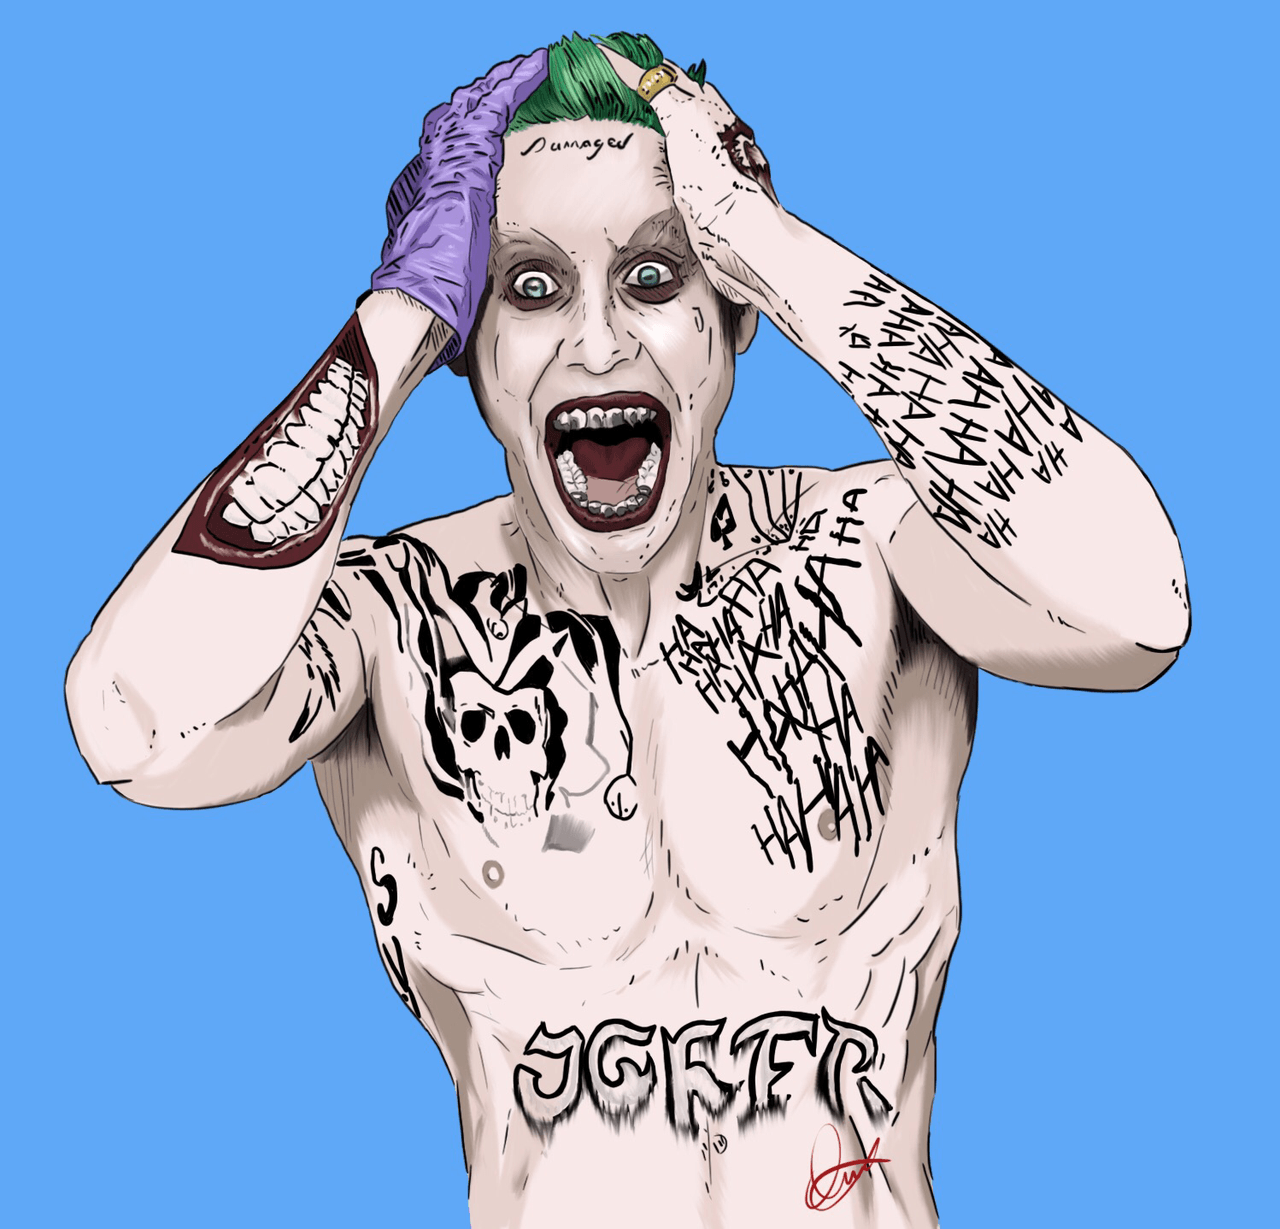 Download Jared Leto Joker Wallpaper Desktop Background